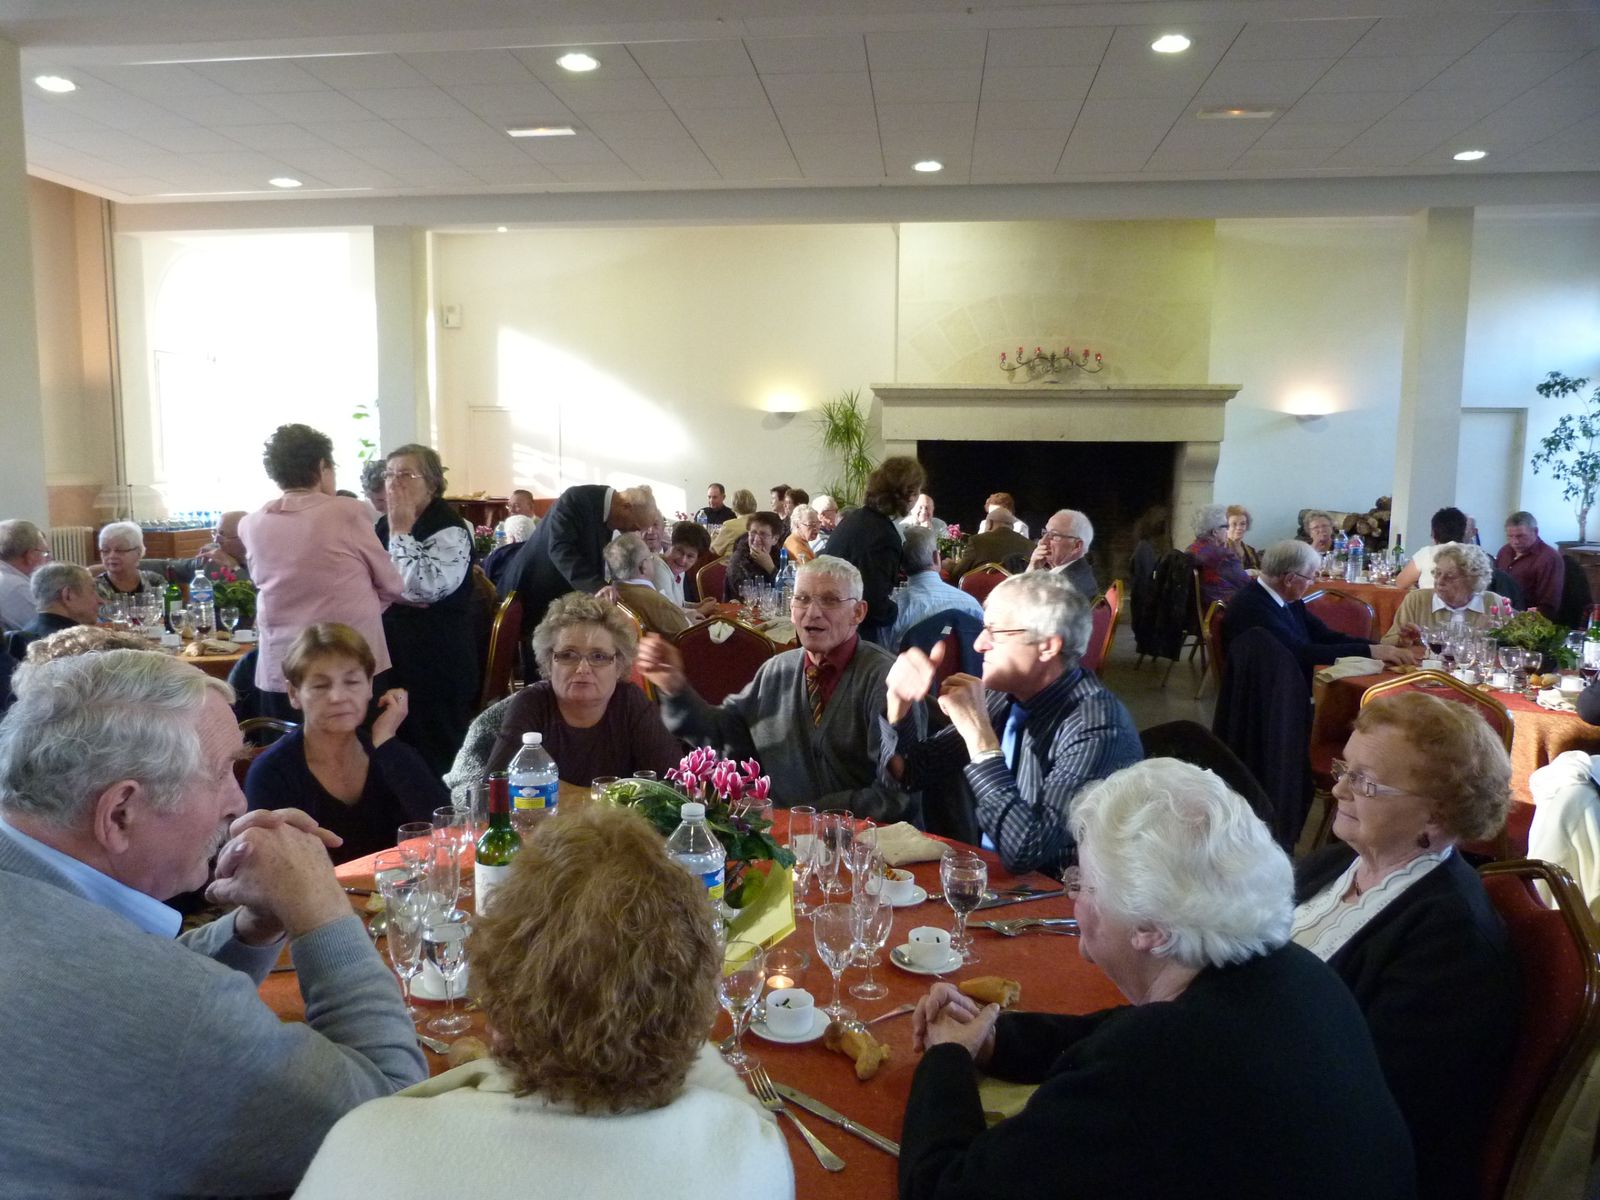 Chantereine, l'Amicale des retraités de Chantereine, repas de fin d'année, 25 novembre 2012 (2éme partie)